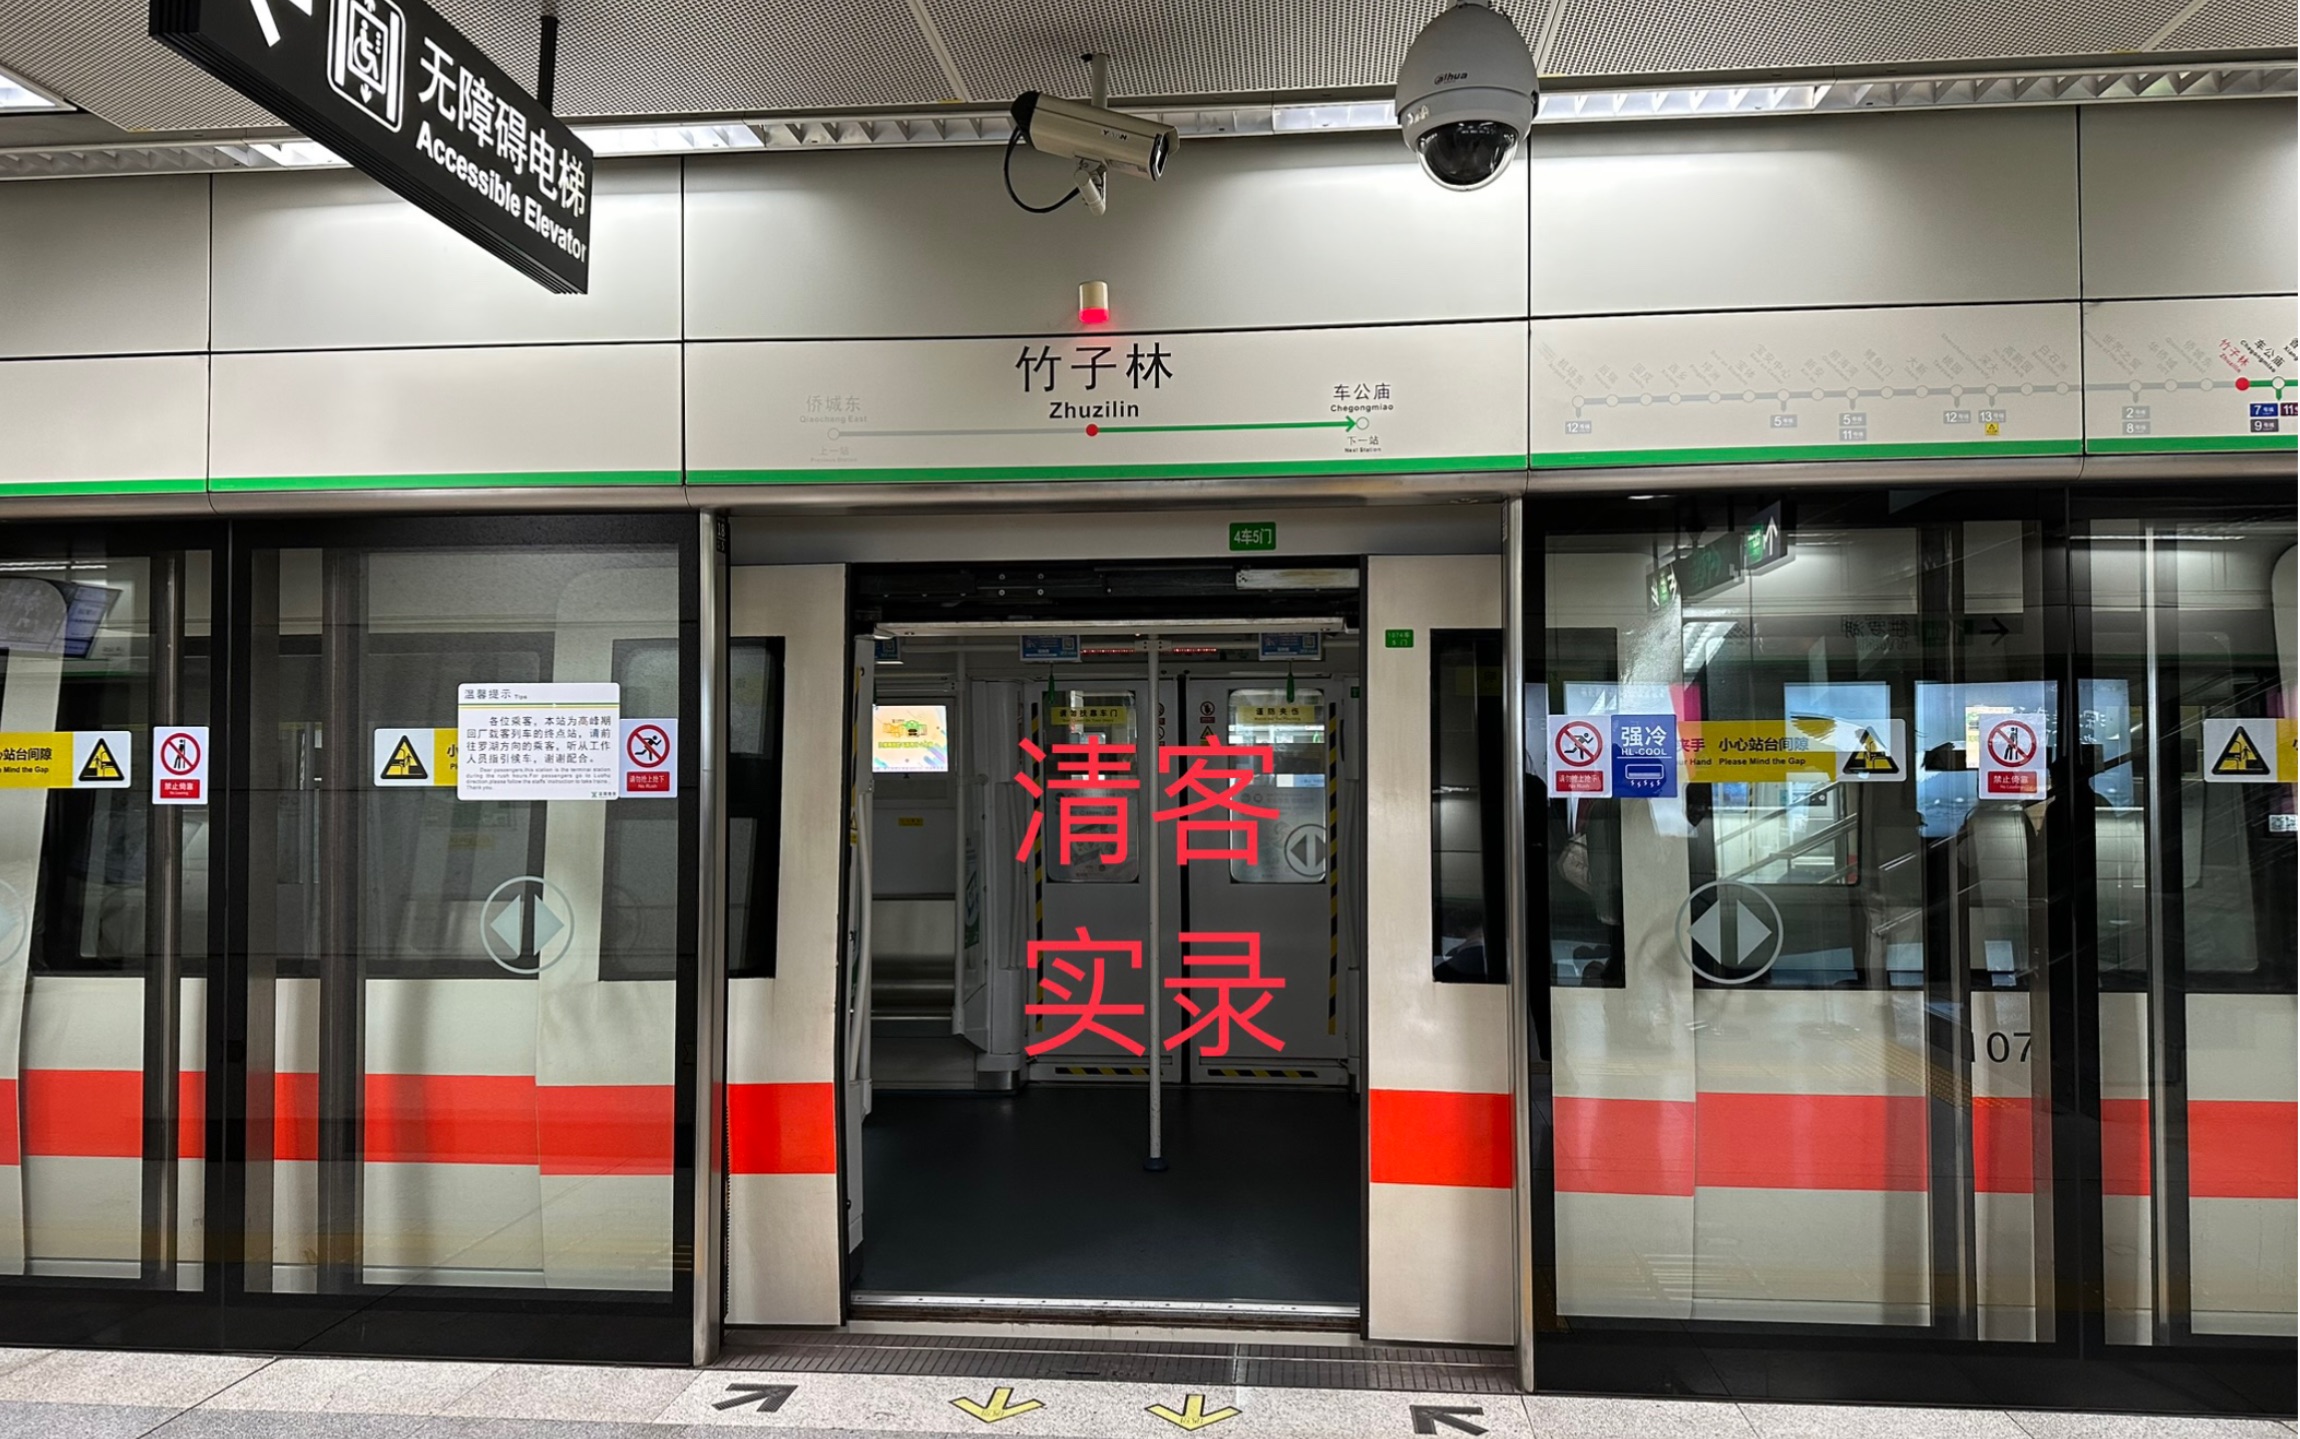 竹子林地铁站图片